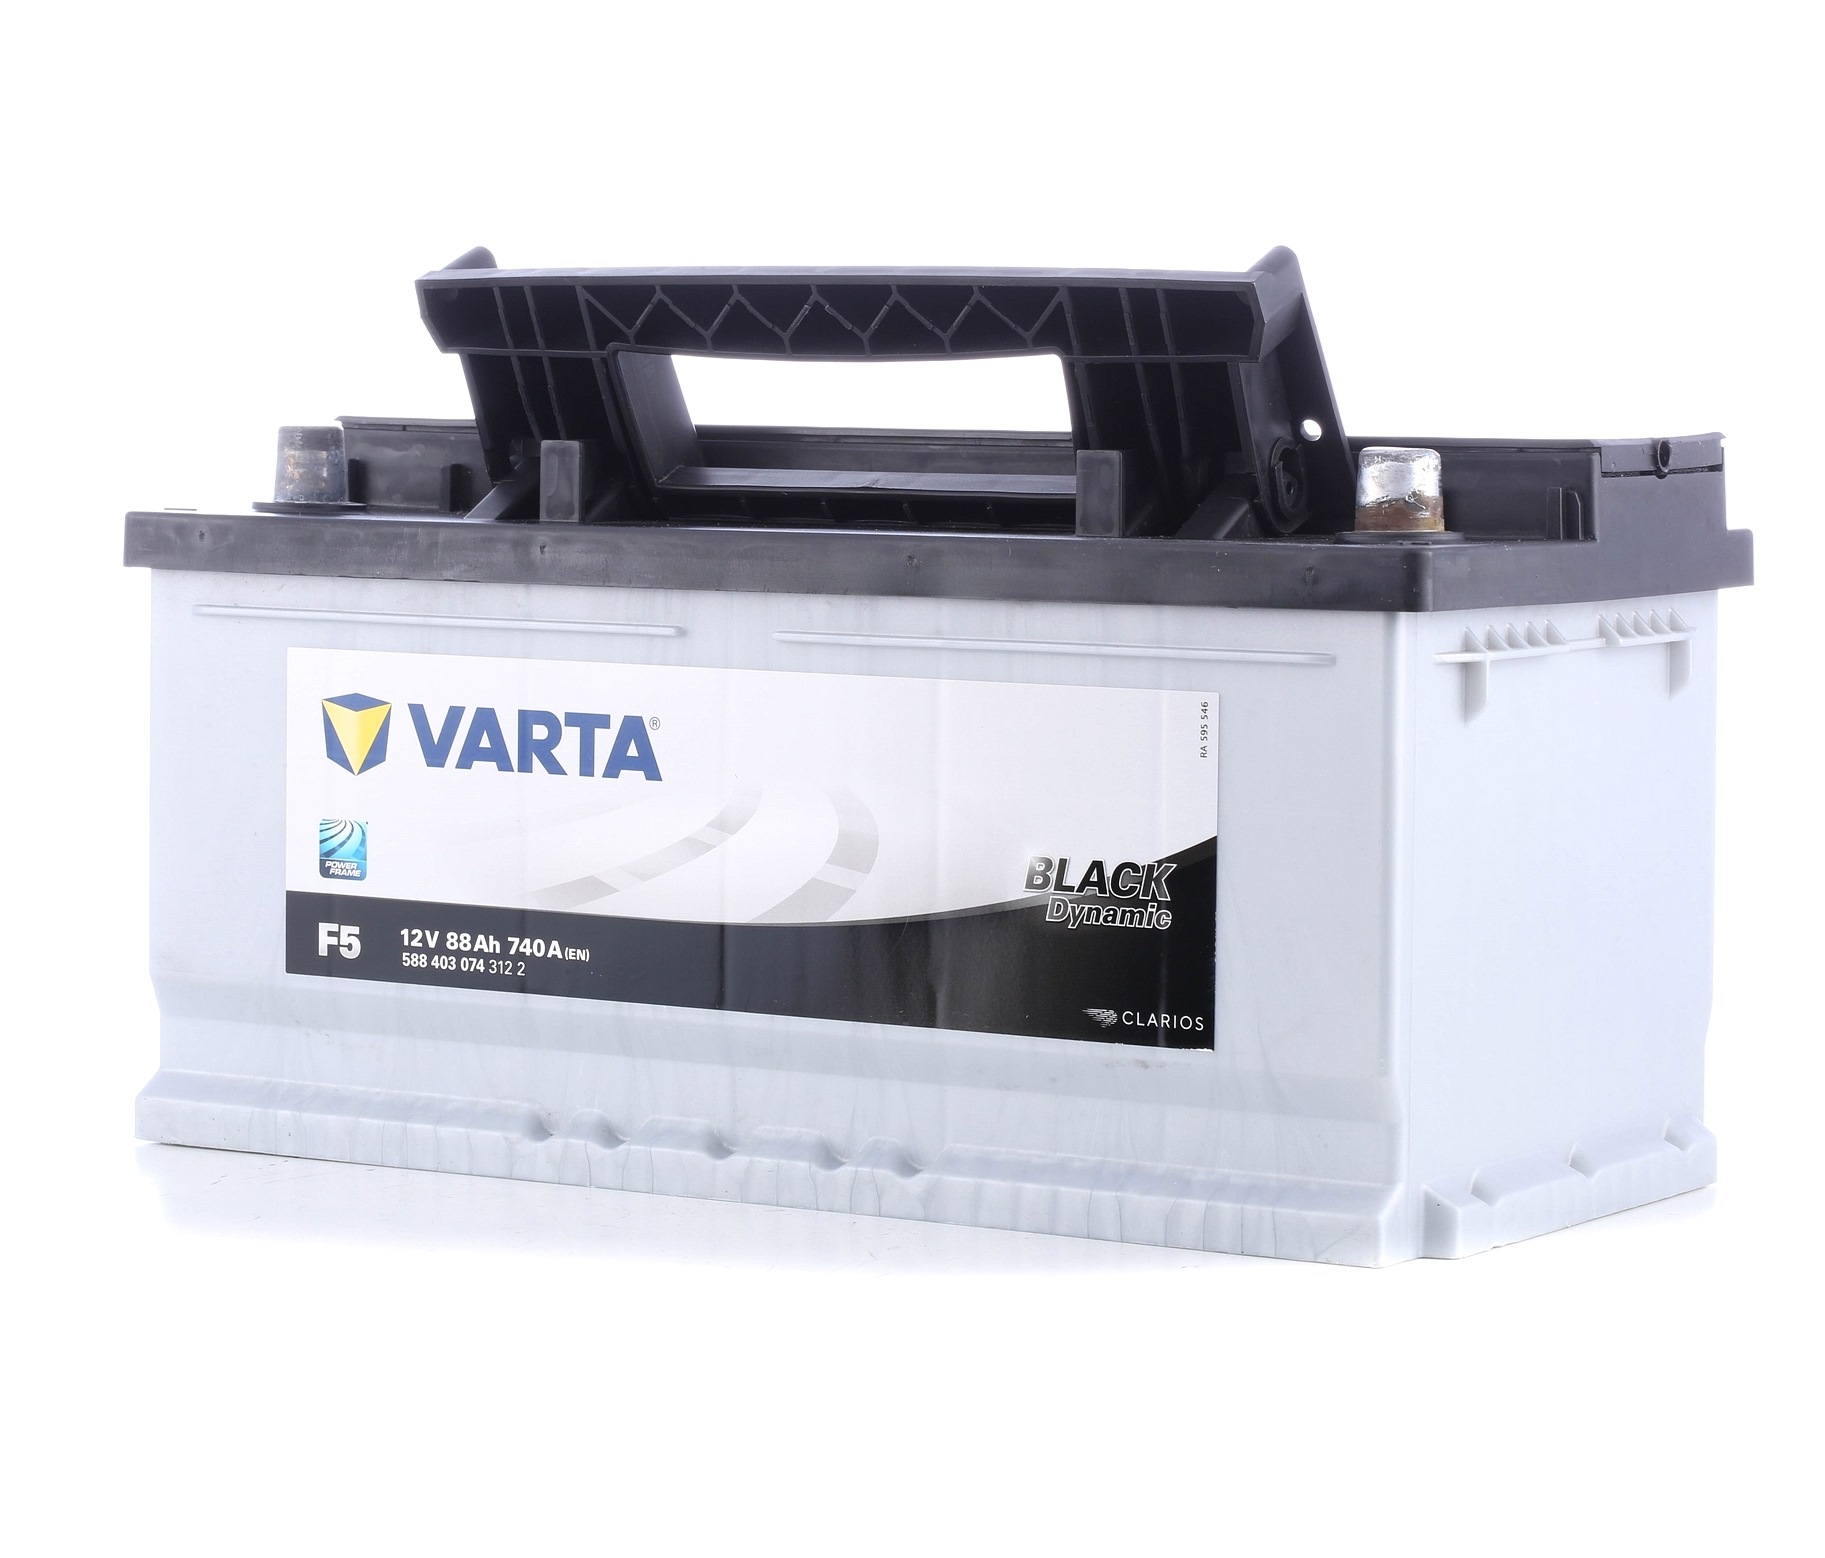 F5 VARTA BLACK dynamic F5 5884030743122 Battery 95 374 246